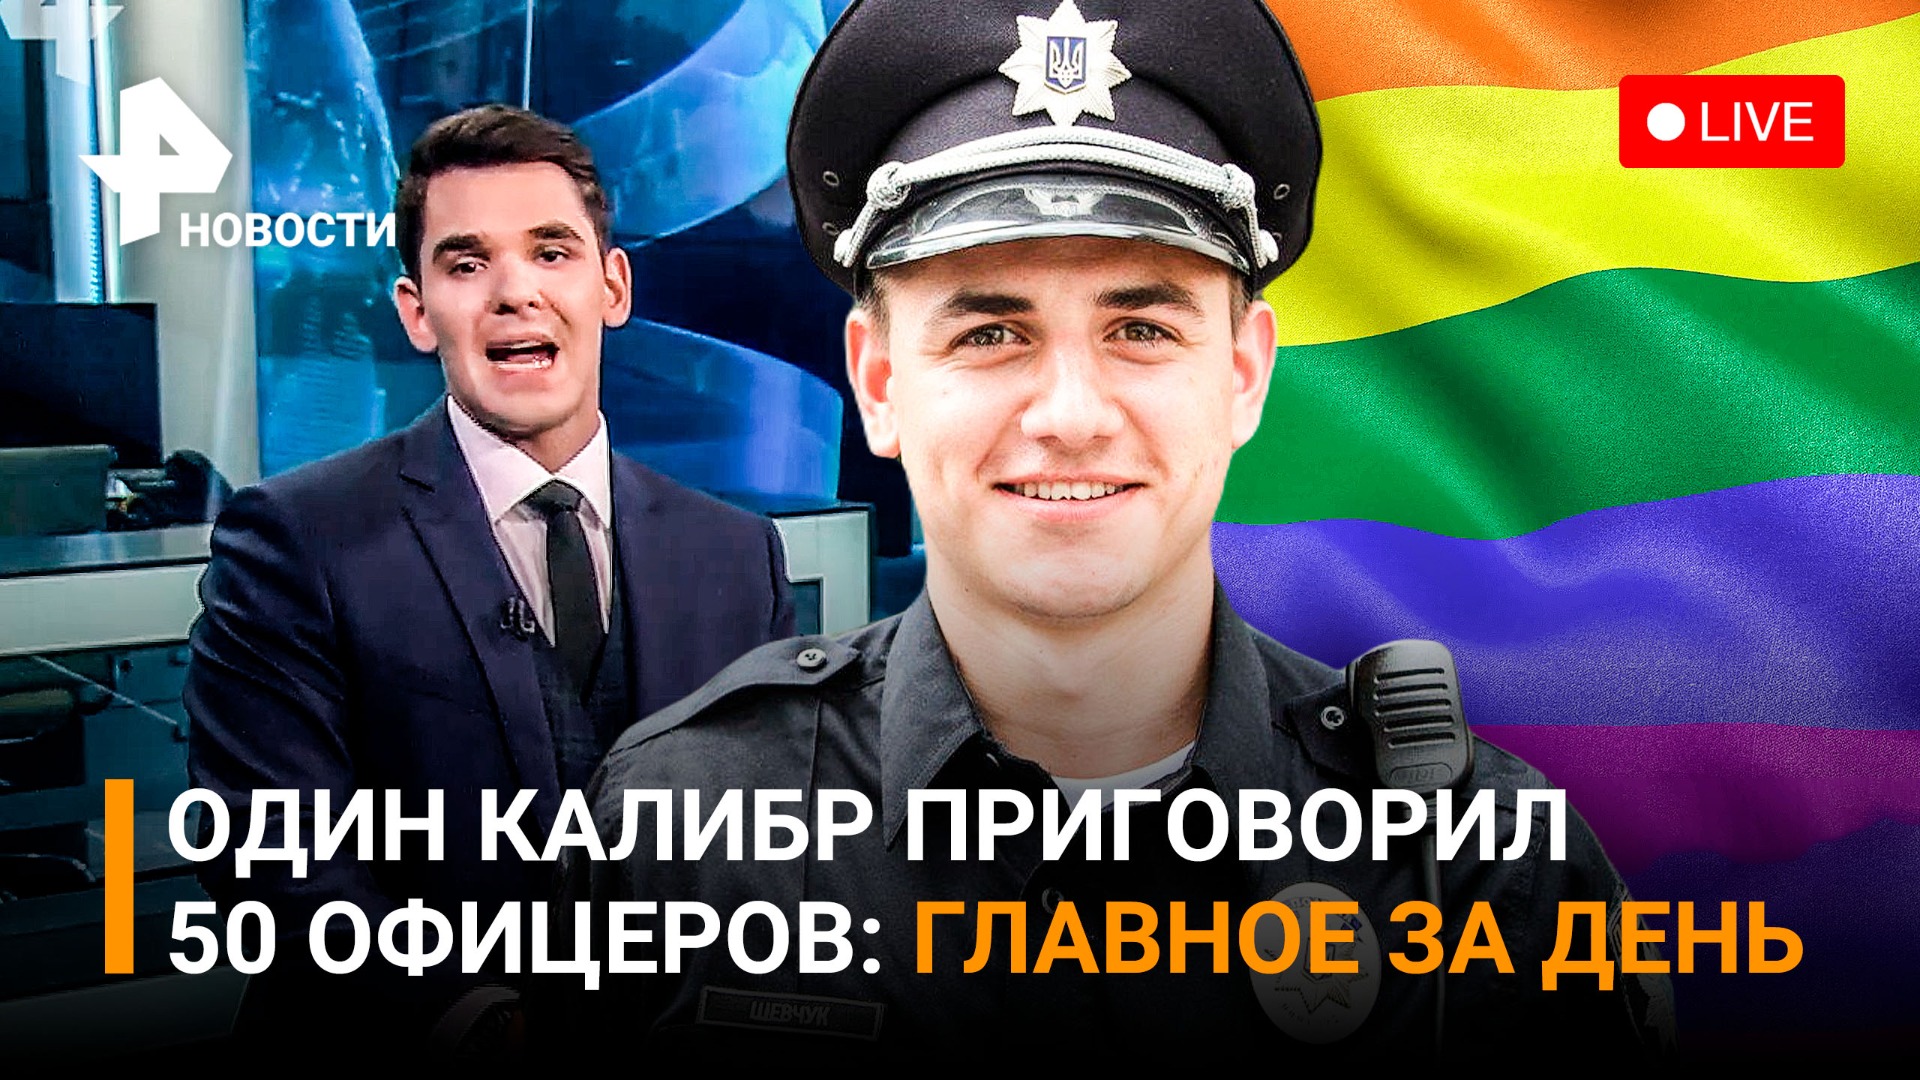 Один полицейский на одного гей-активиста в Кишинёве / ГЛАВНОЕ ЗА ДЕНЬ